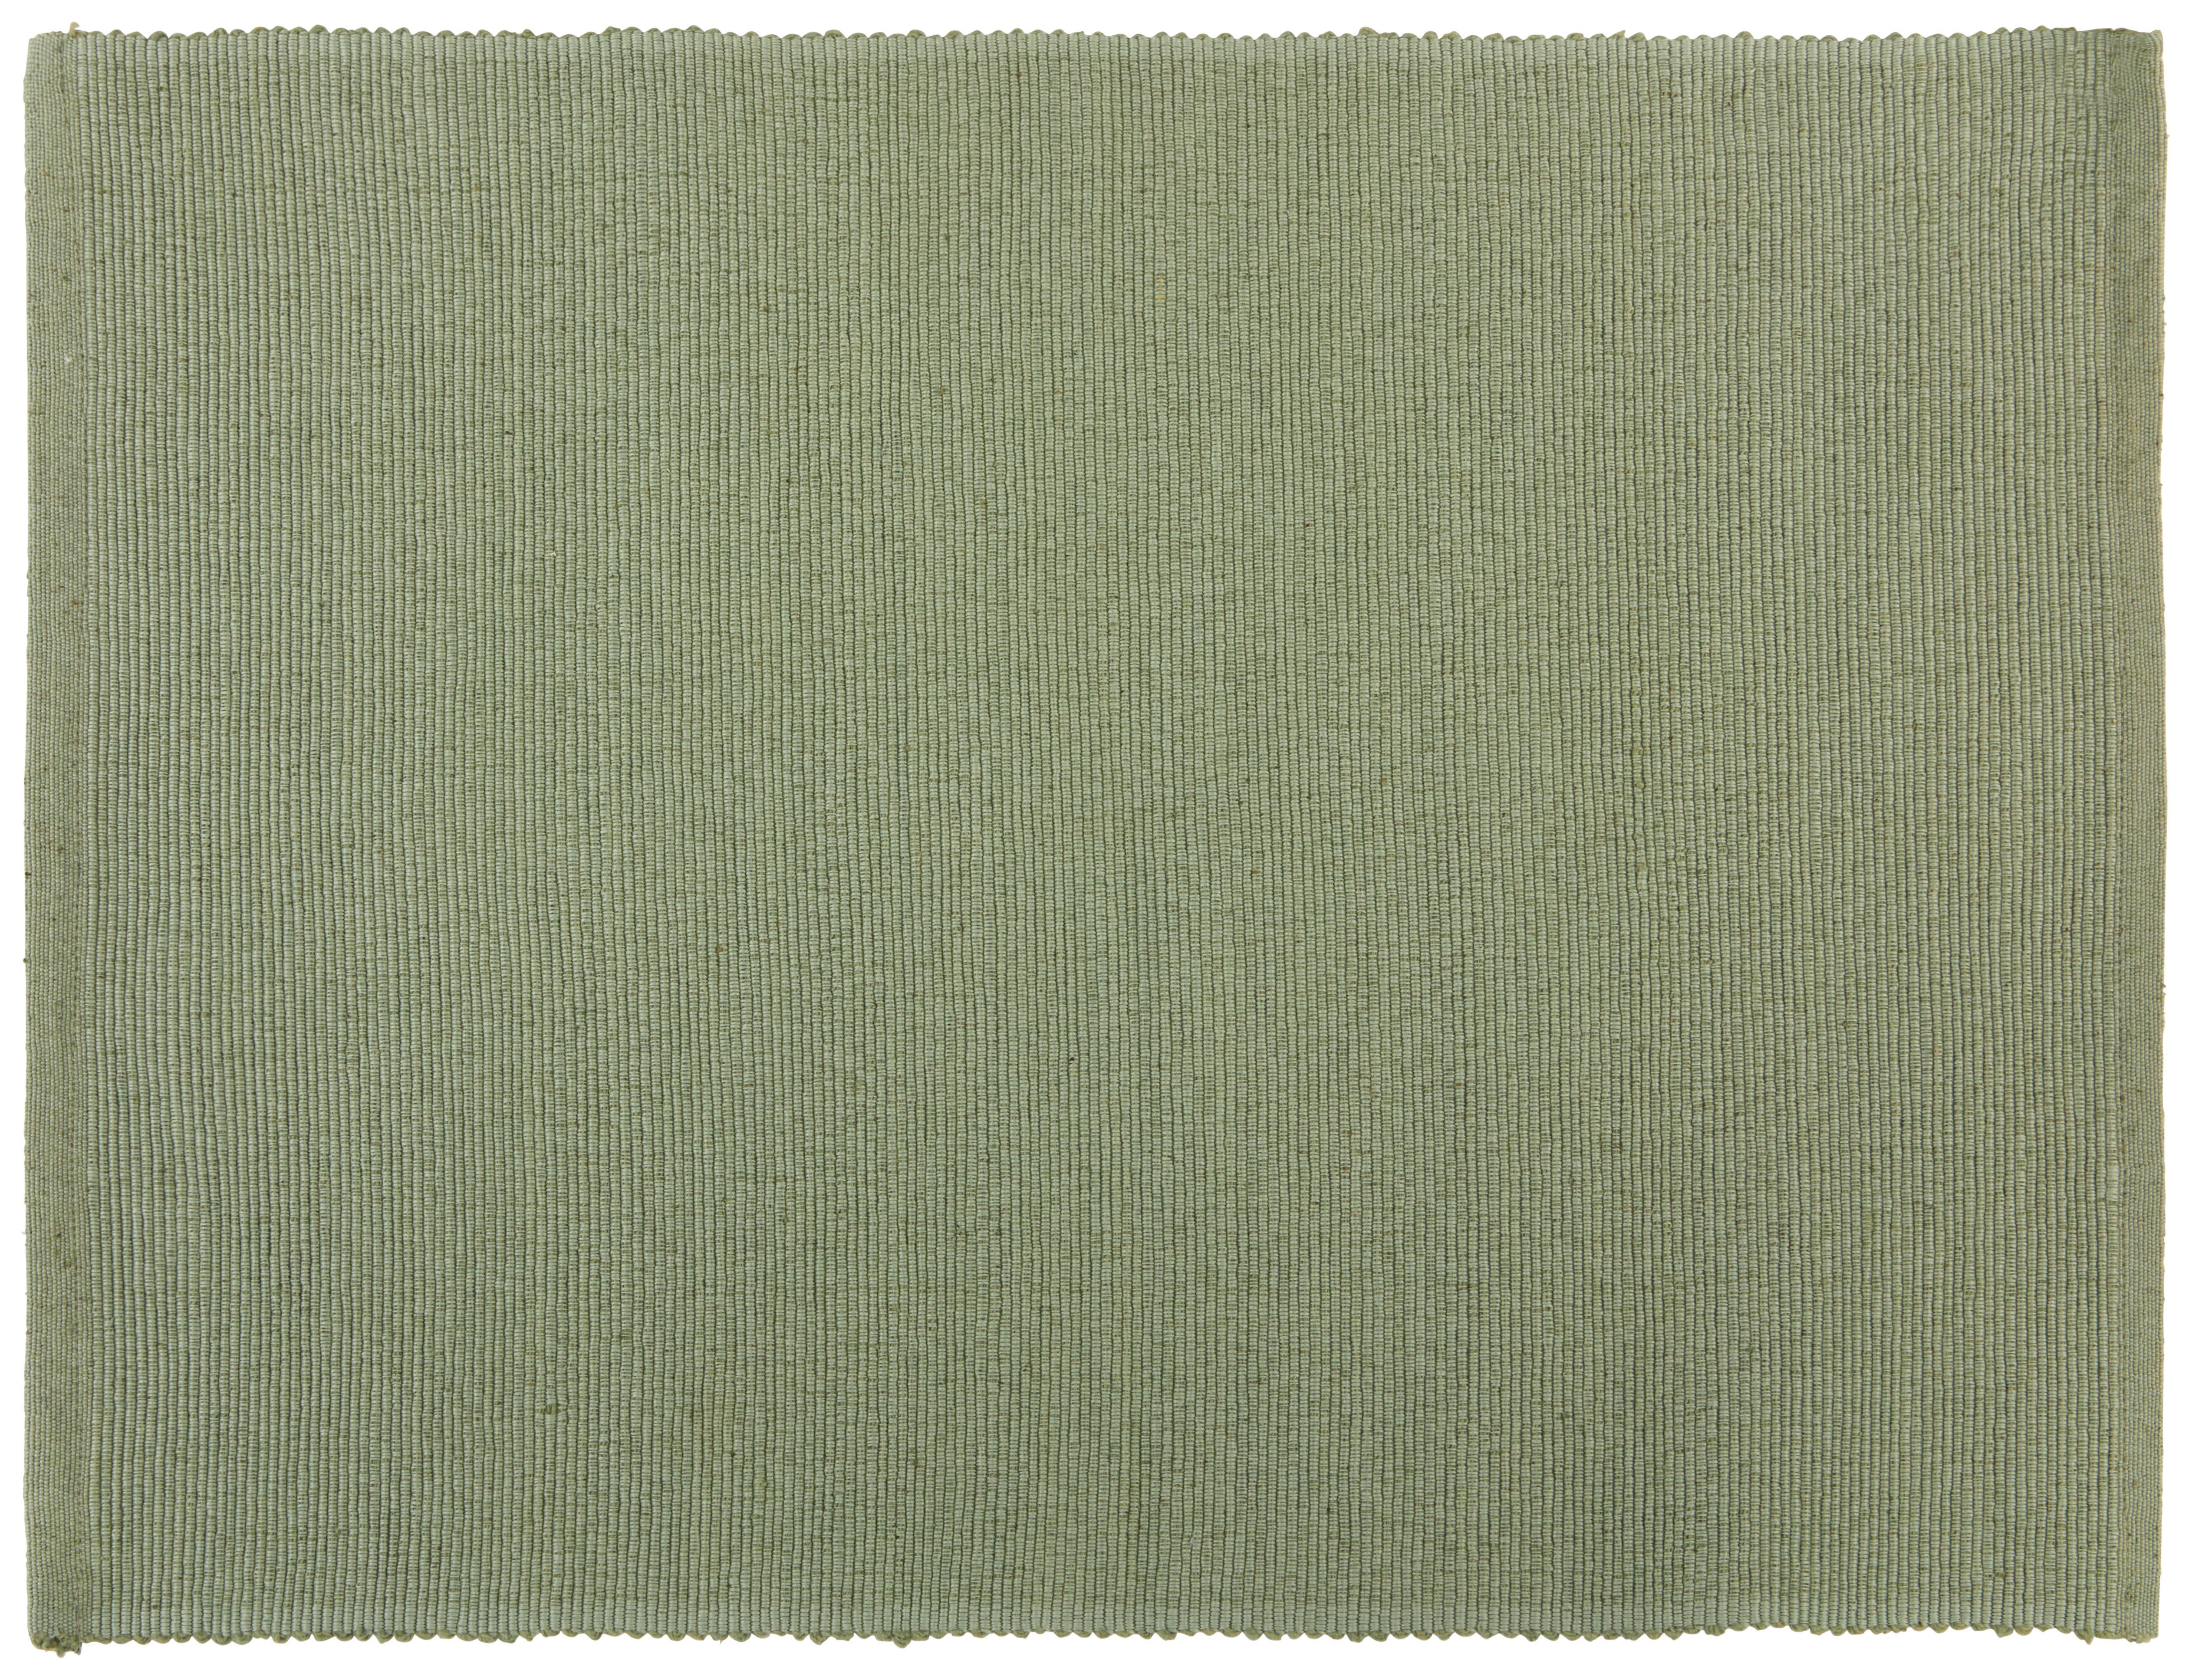 Tischset Maren in Salbeigrün - Salbeigrün, Textil (33/45cm) - Based